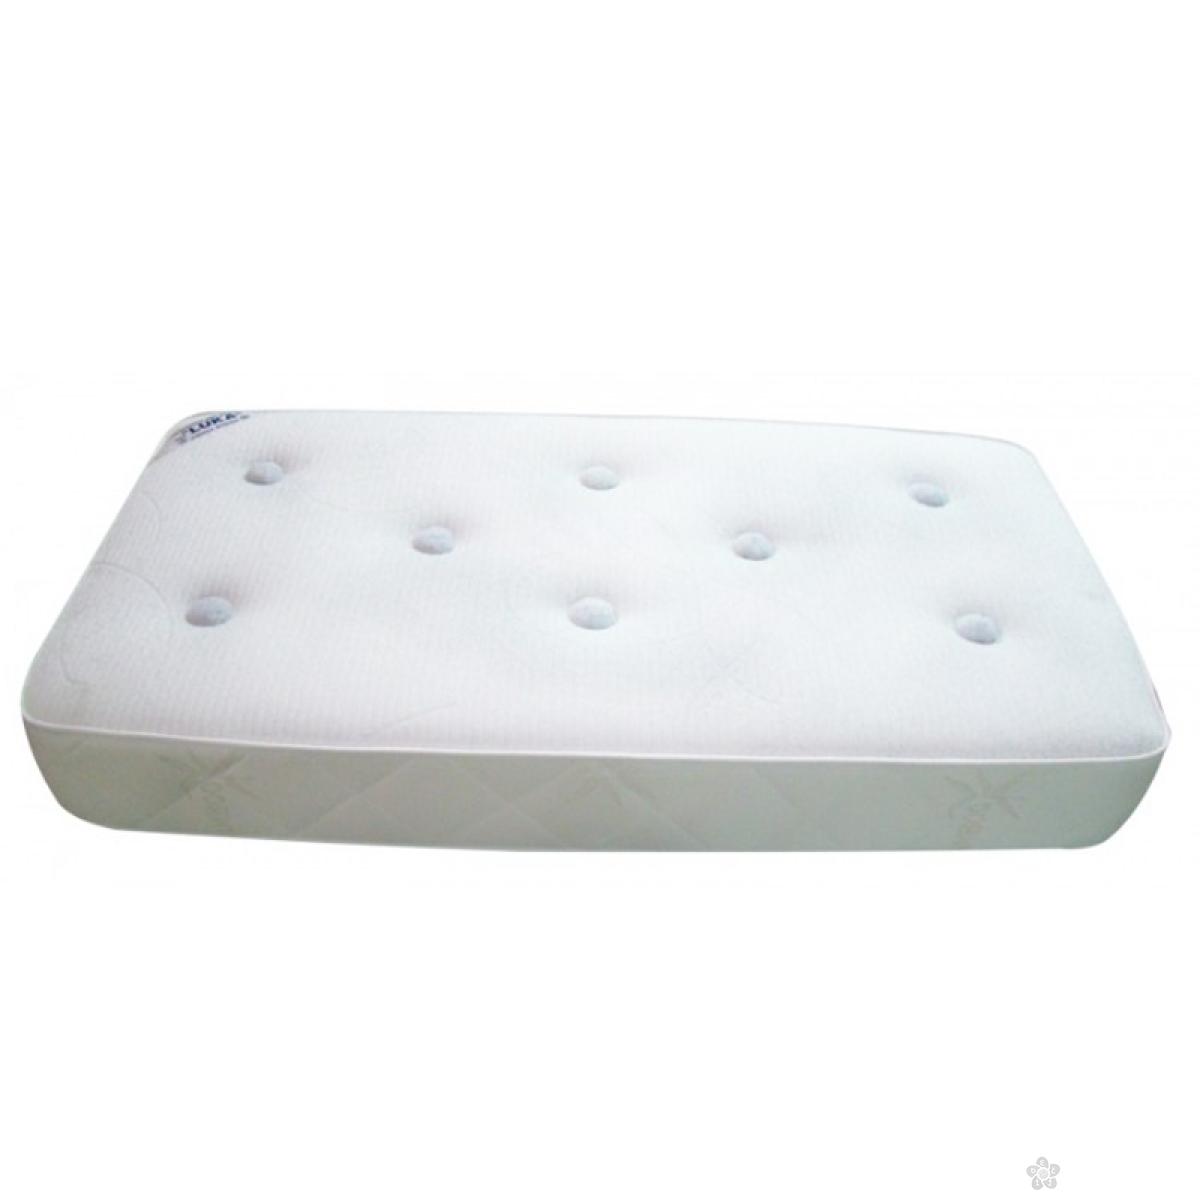 Dušek za krevetac - Lux Medicot 160 x 80 